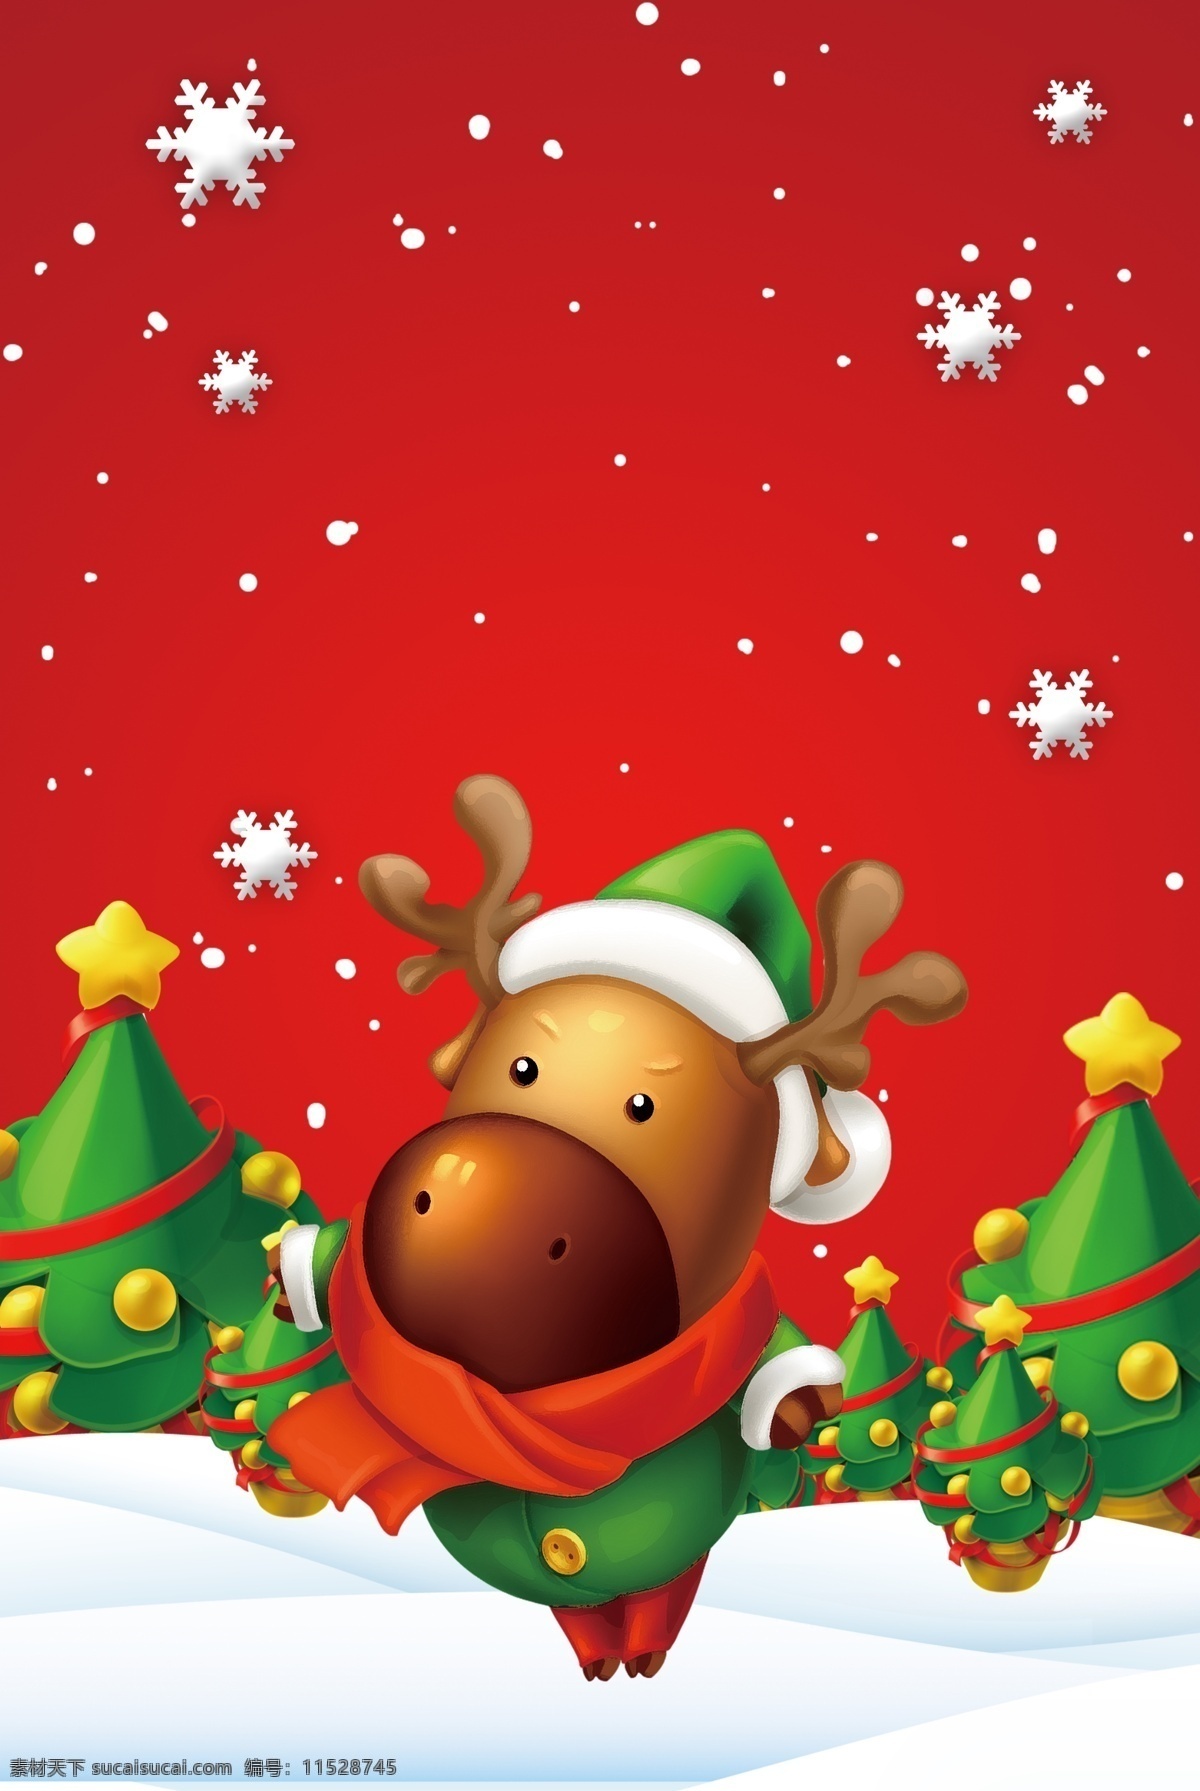 麋鹿 圣诞节 卡通 手绘 广告 背景 图 可爱 圣诞树 礼盒 扁平风 雪人 圣诞老人 卡通风 圣诞快乐 圣诞 扁平